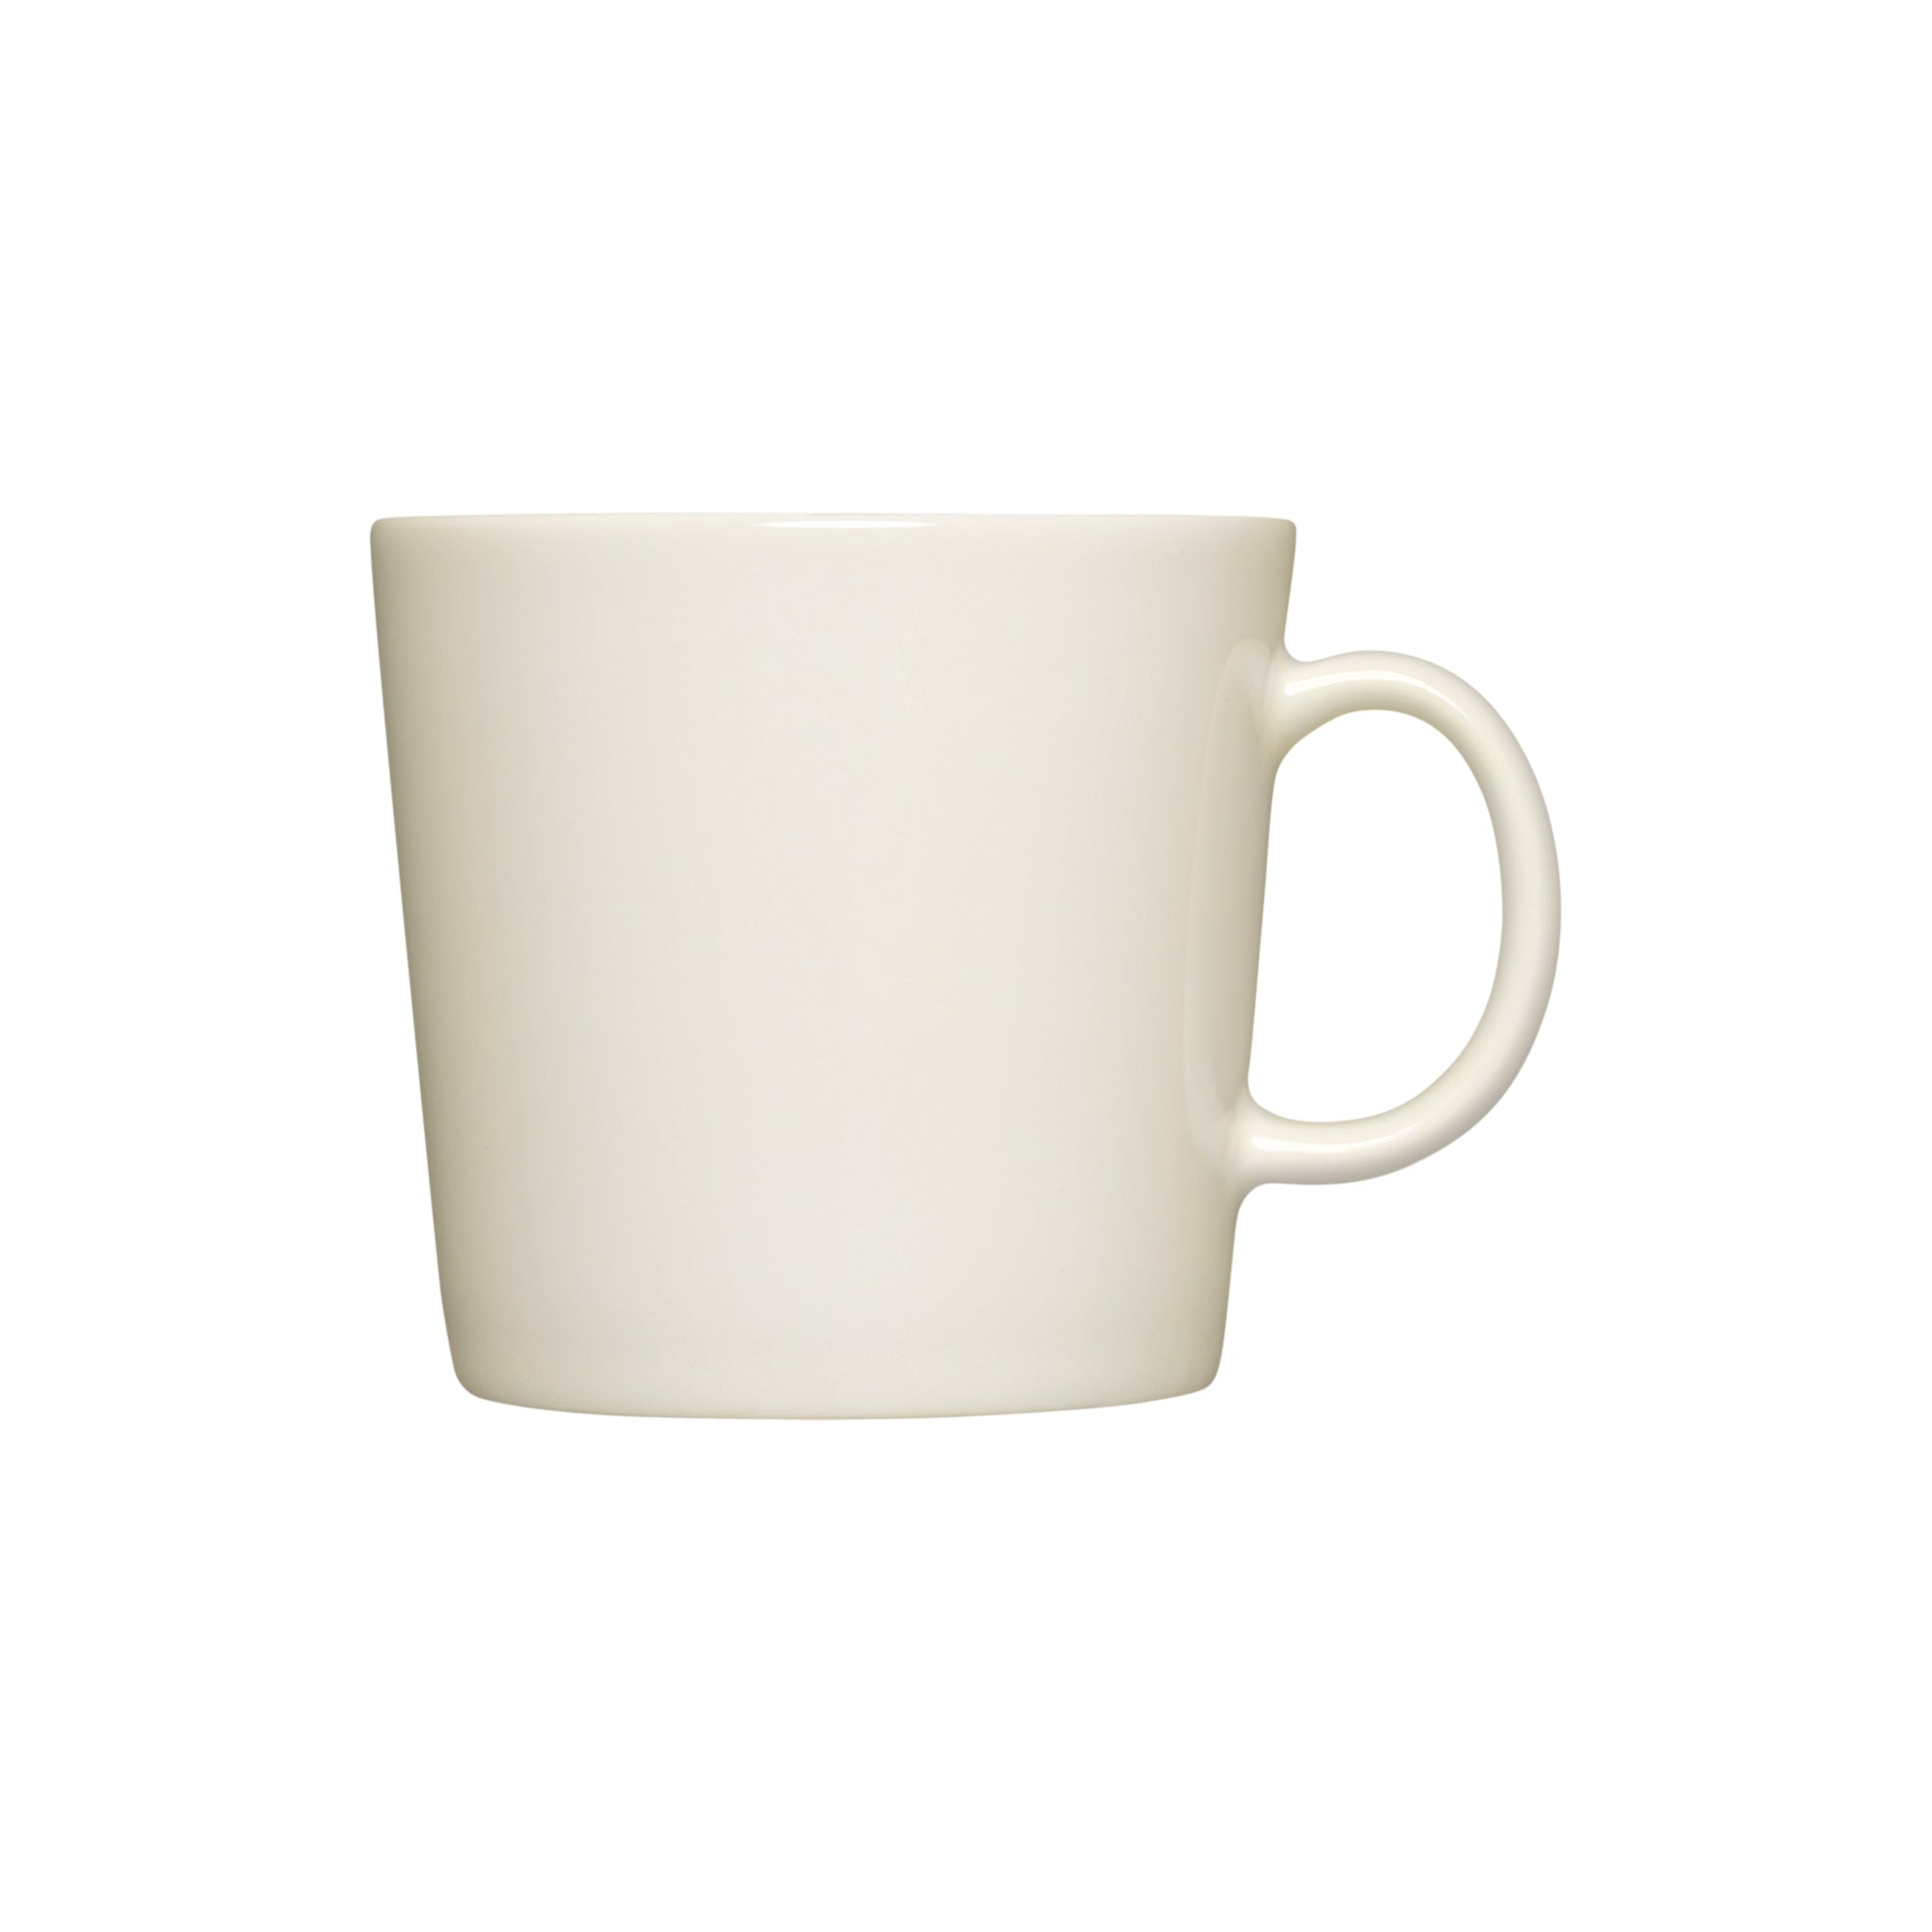 Teema mug 0.4 l large mug 13.5oz